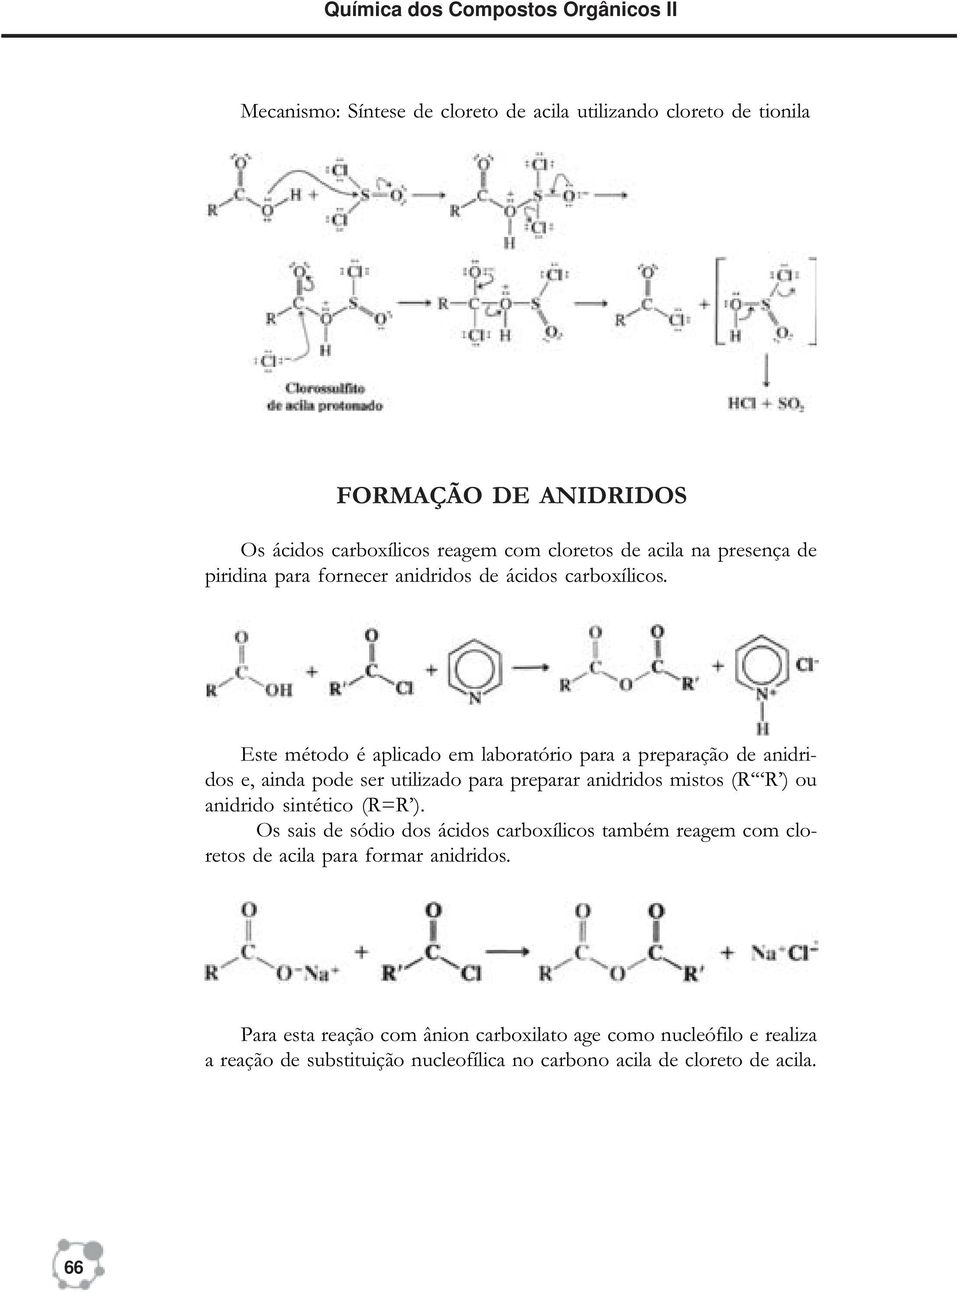 Este método é aplicado em laboratório para a preparação de anidridos e, ainda pode ser utilizado para preparar anidridos mistos (R R ) ou anidrido sintético (R=R ).